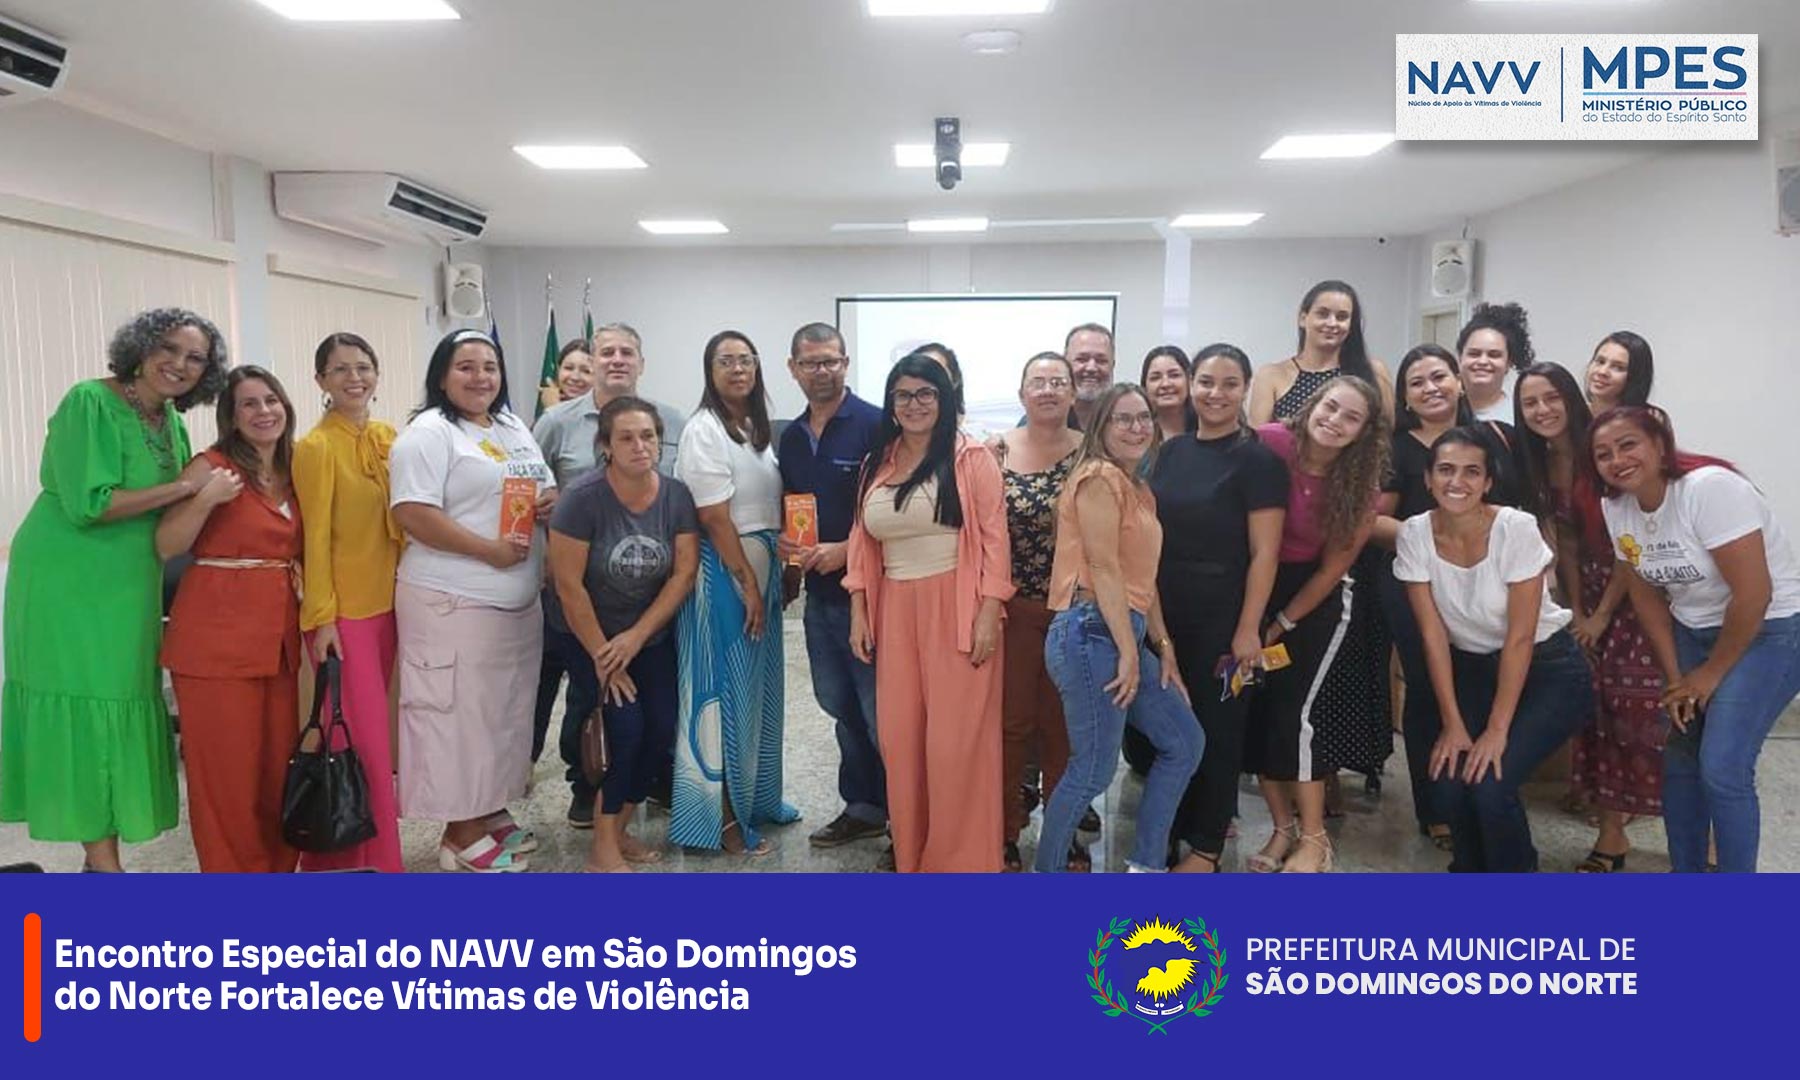 NOTÍCIA: Encontro Especial do NAVV em São Domingos do Norte Fortalece Vítimas de Violência